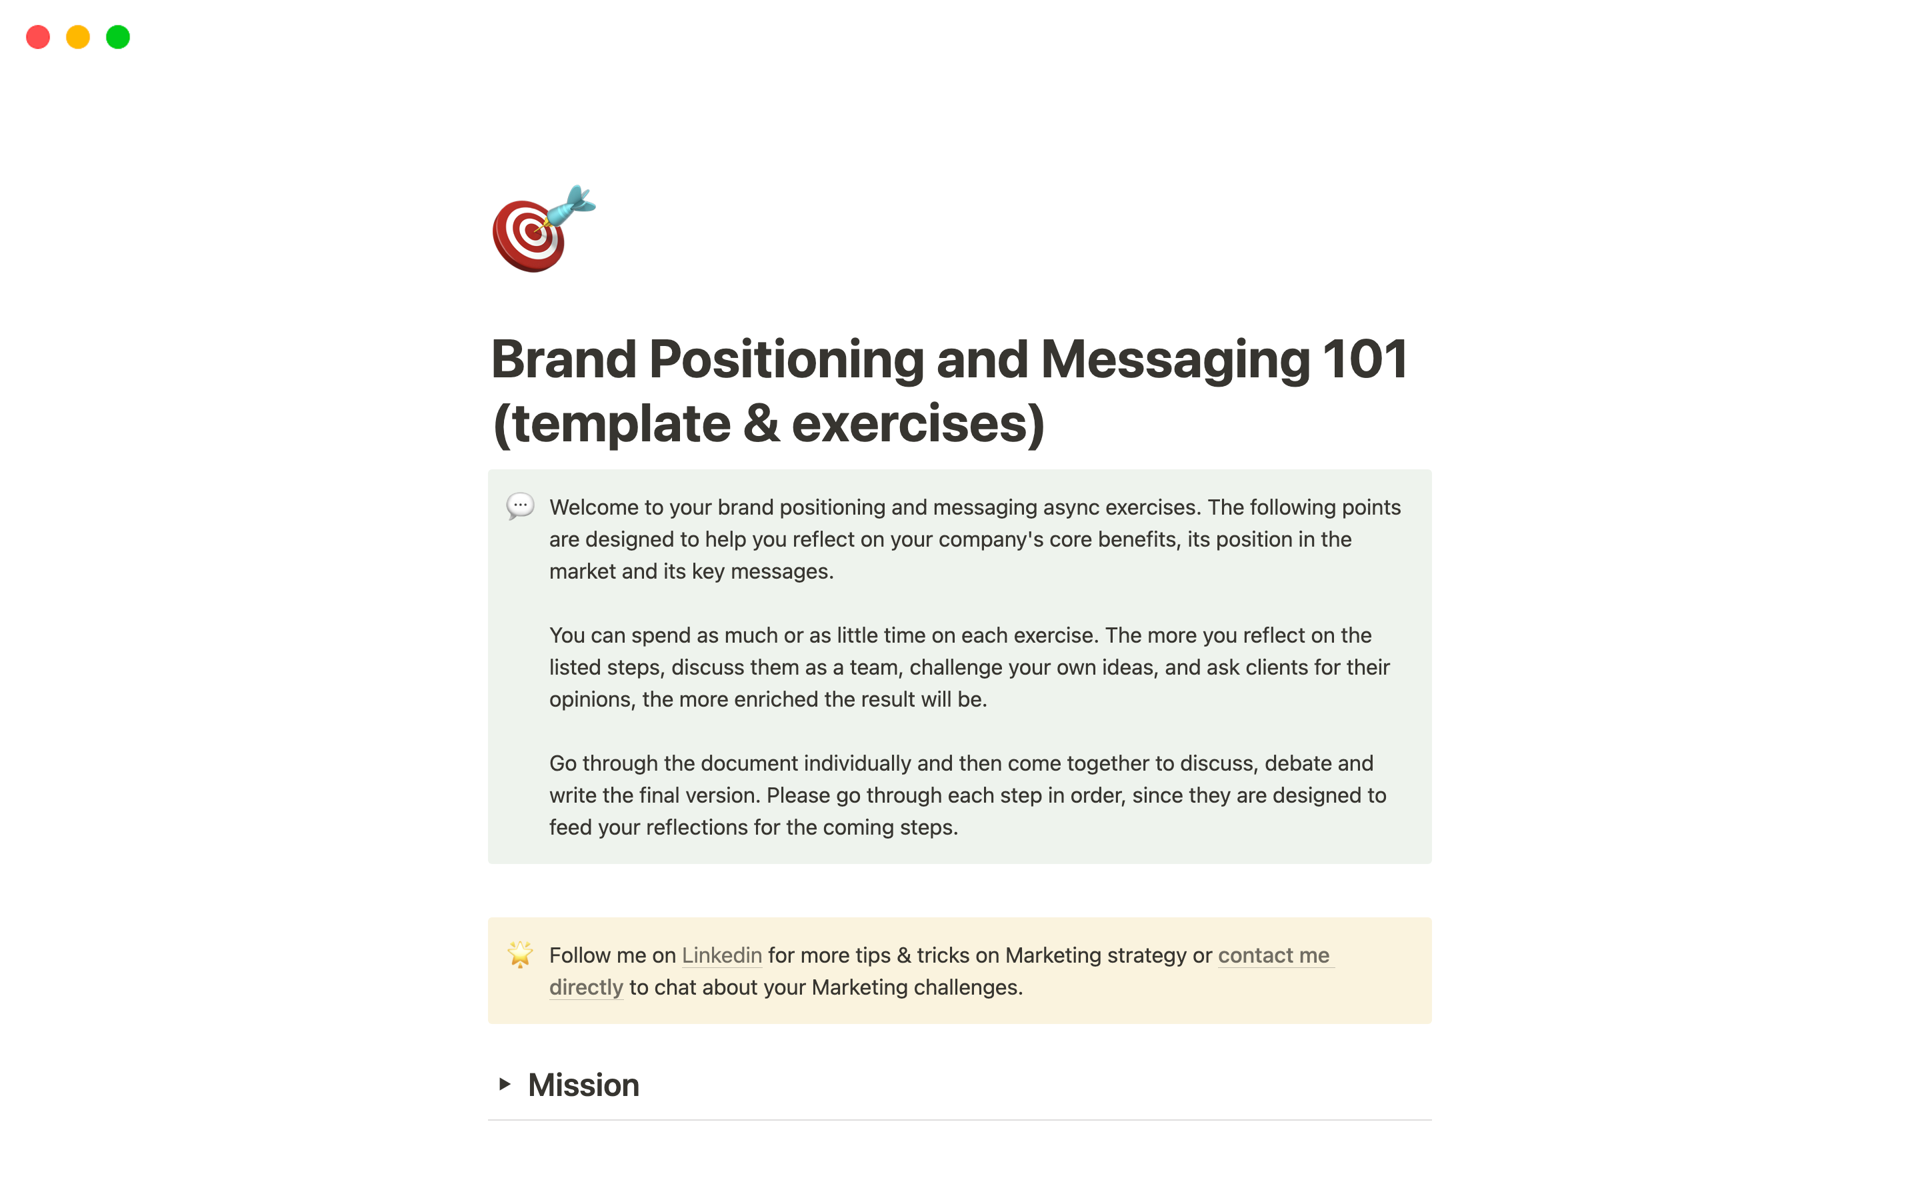 Uma prévia do modelo para Brand Positioning and Messaging 101 (template & exercises)